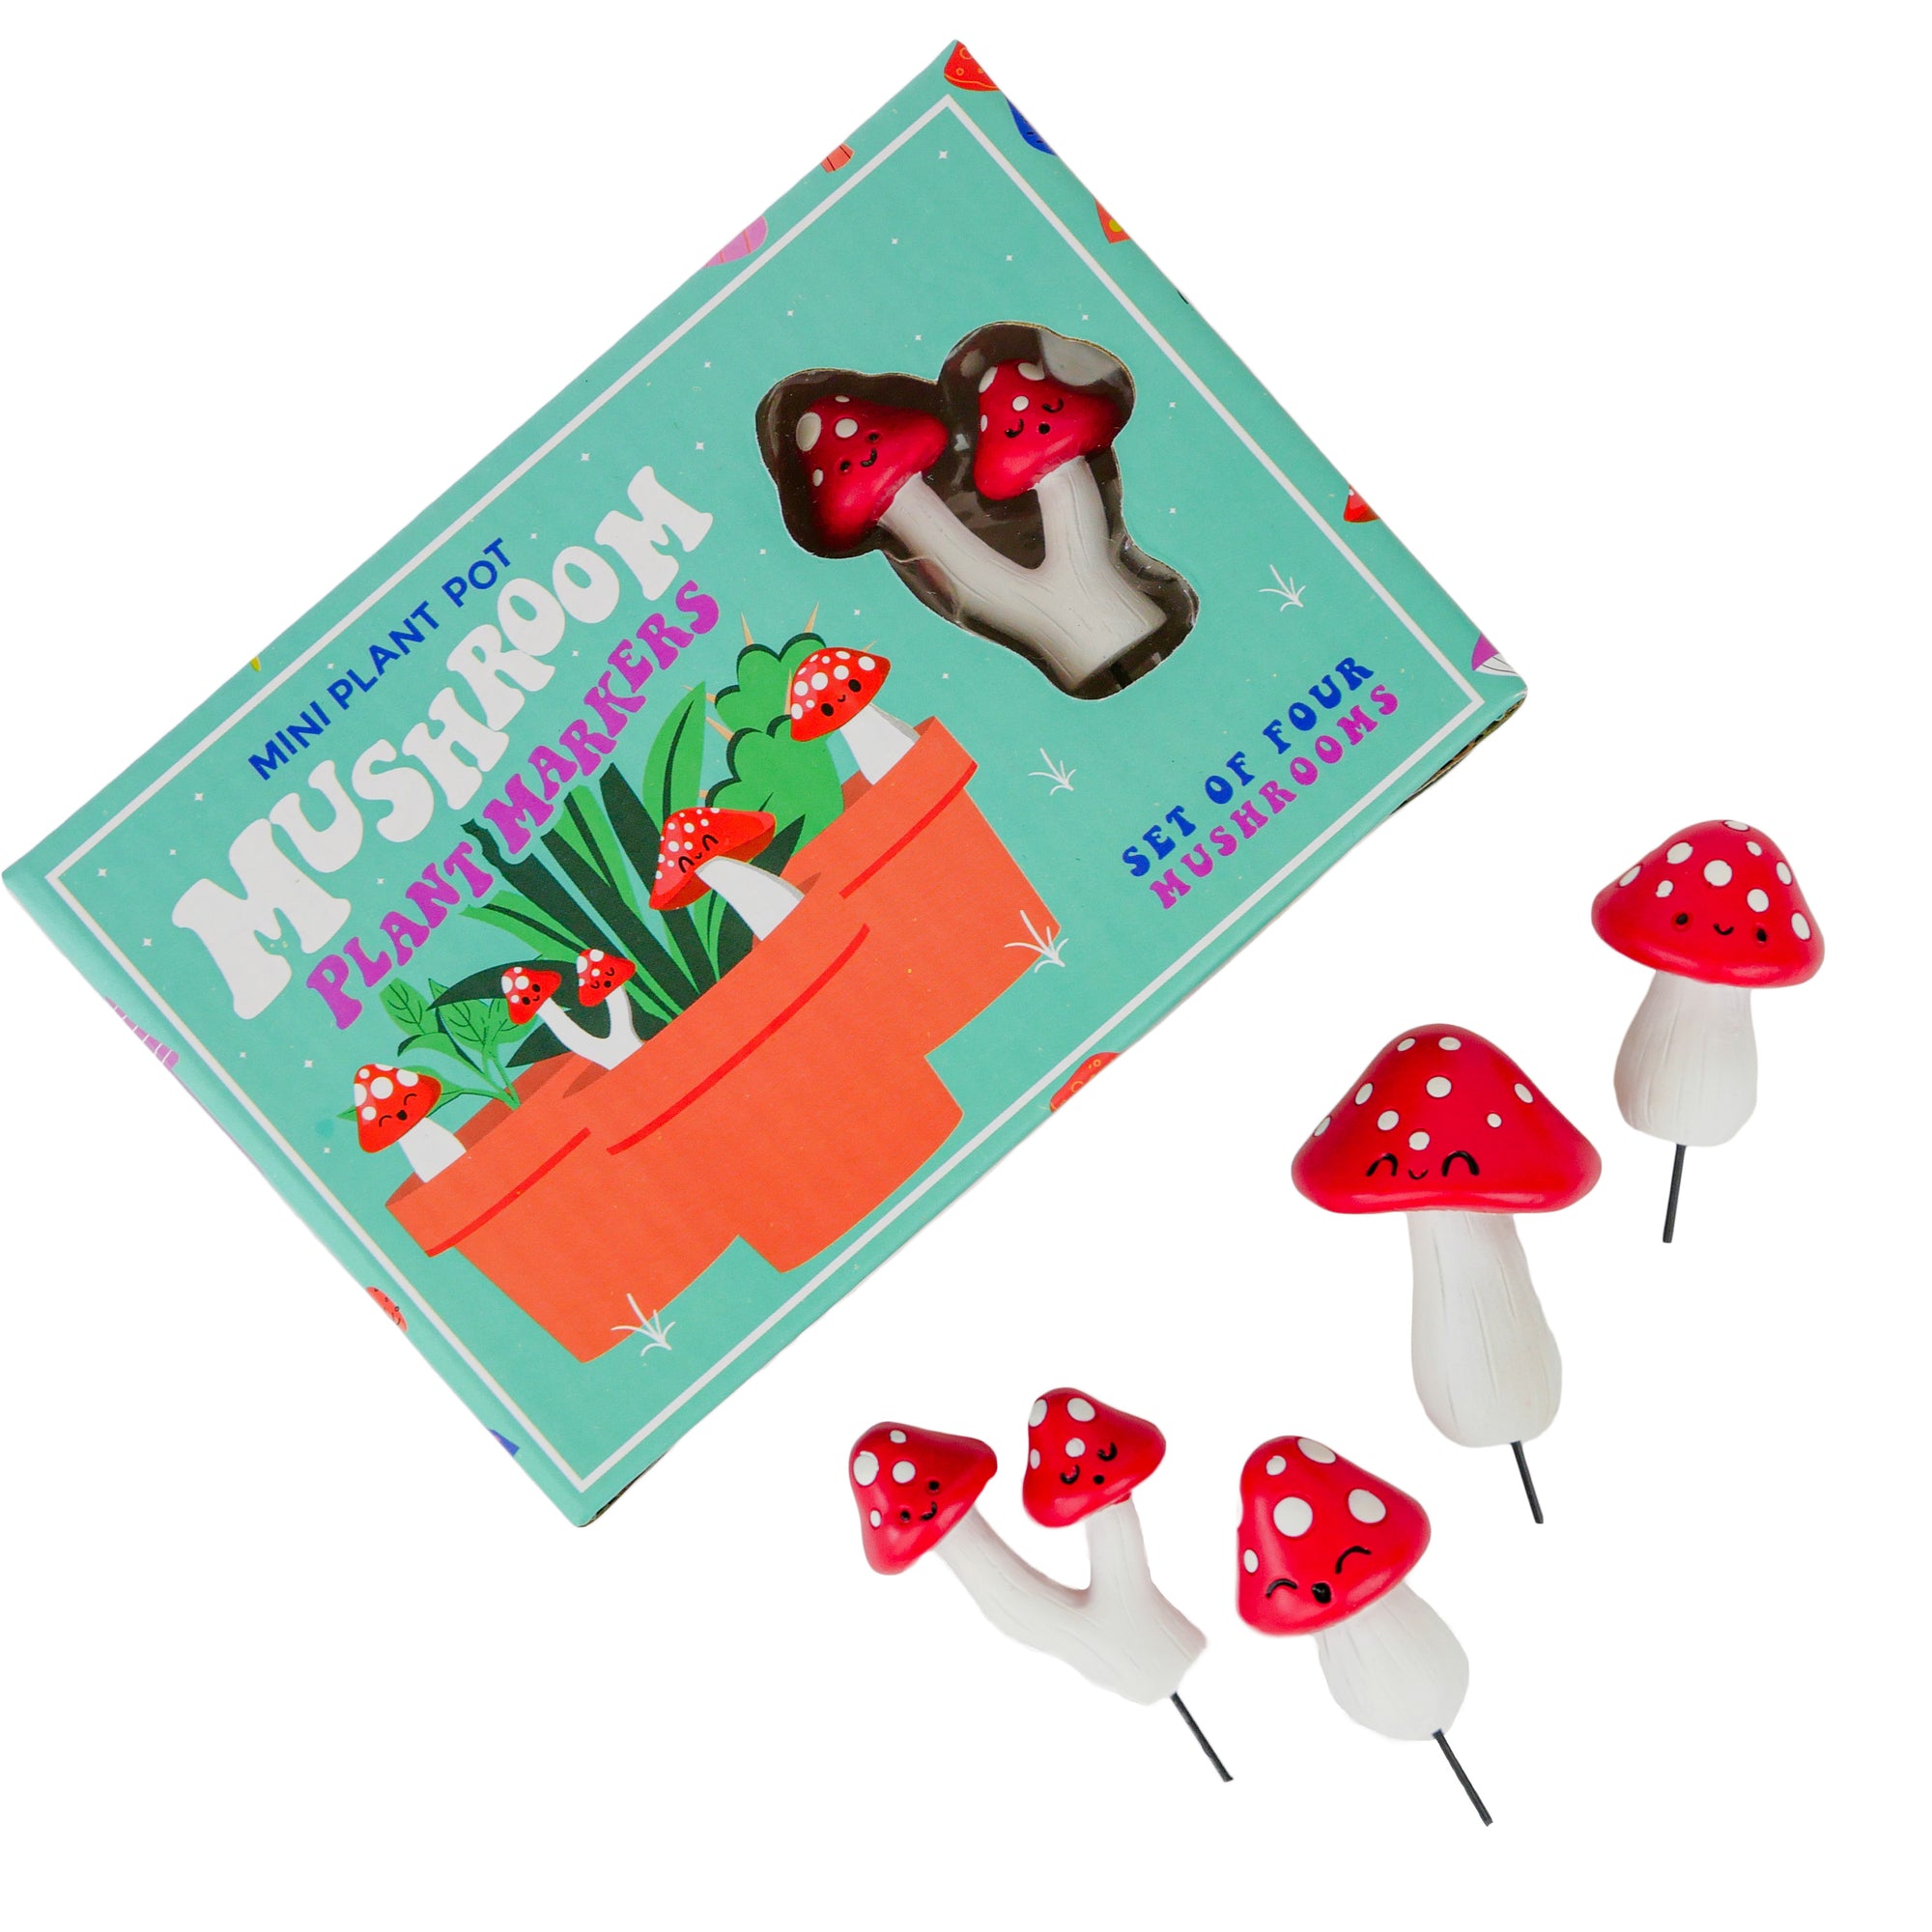 Plantdecoratie Mushroom - Gift Republic